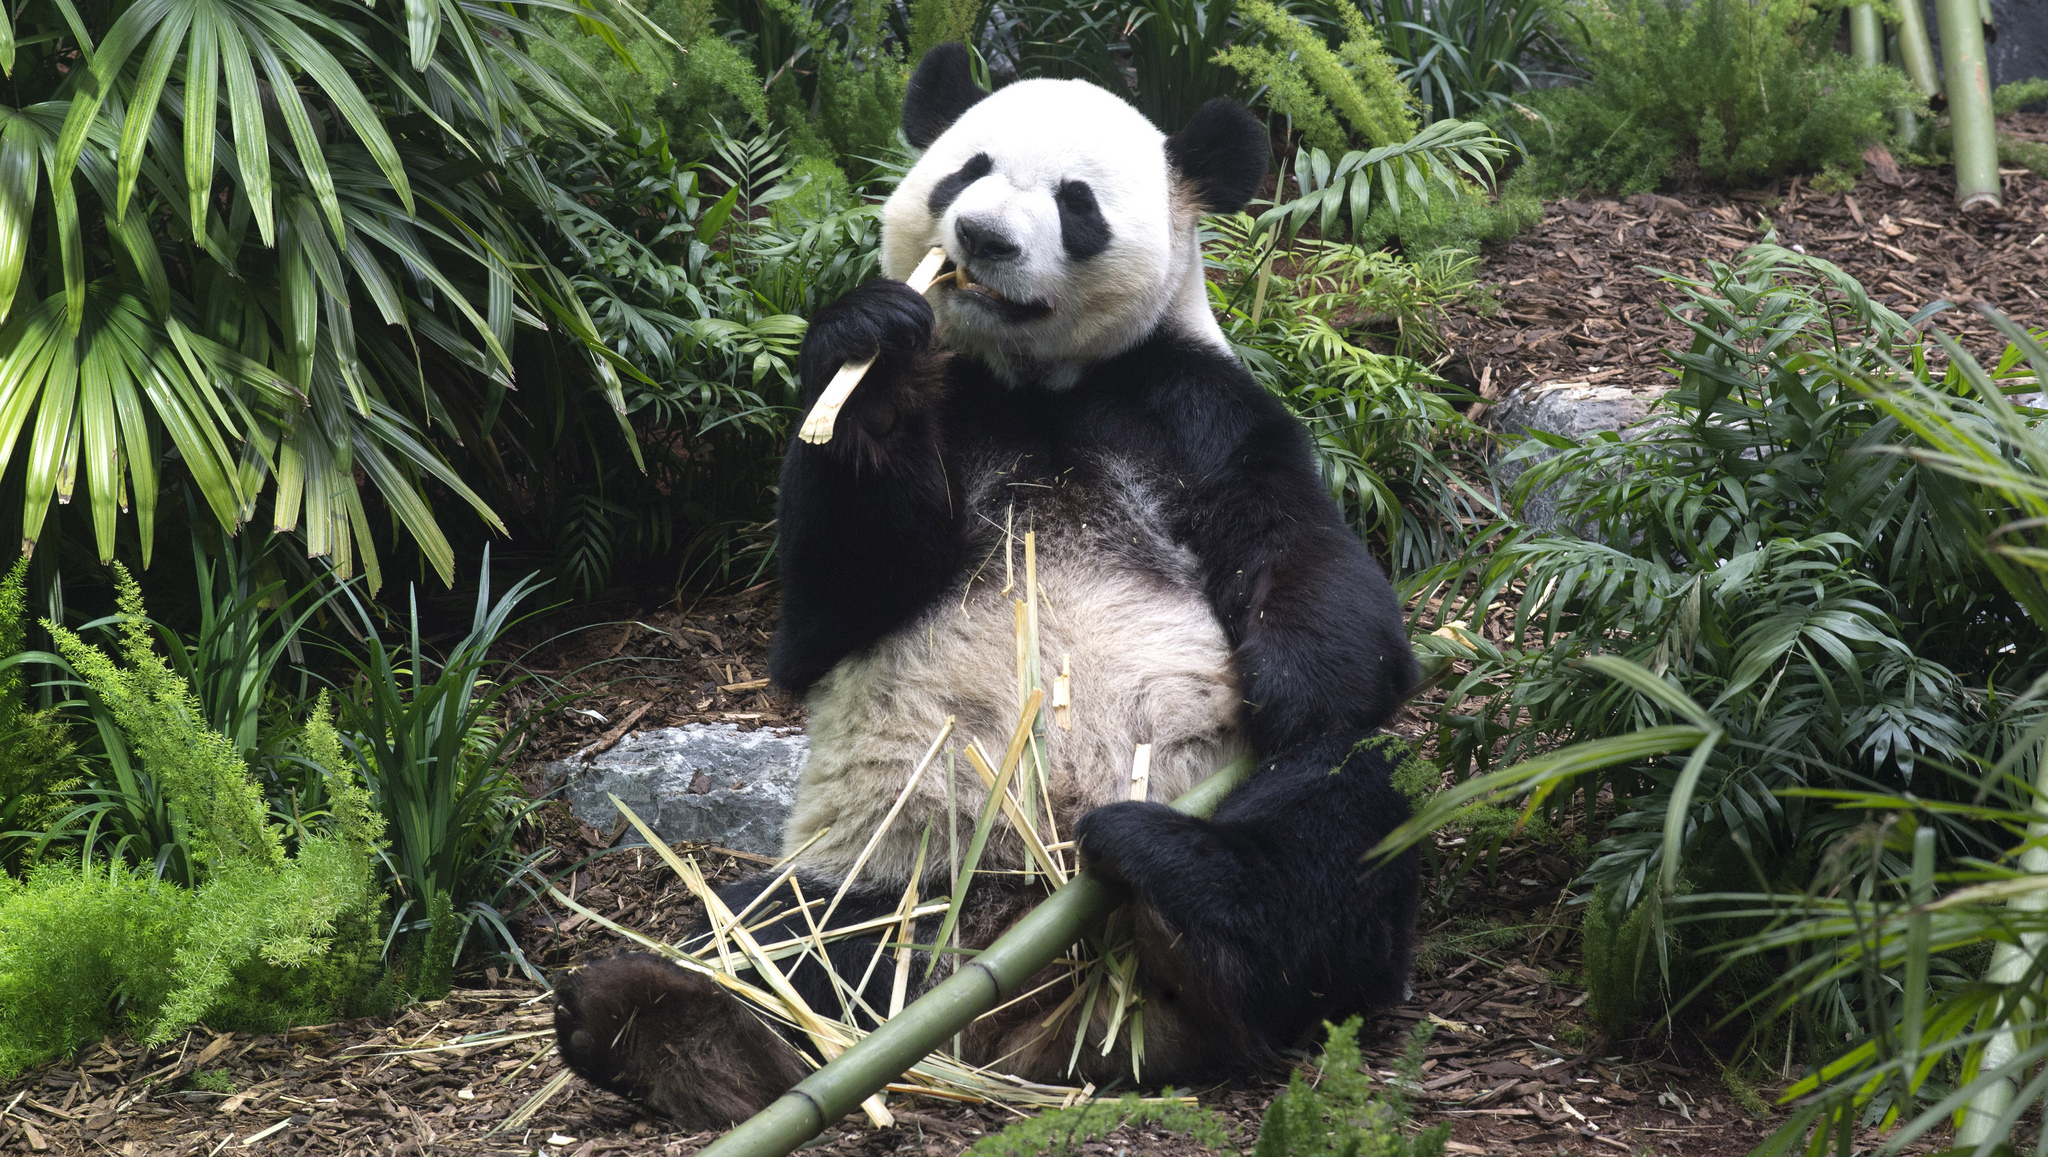 It’s Panda-monium at the Calgary Zoo